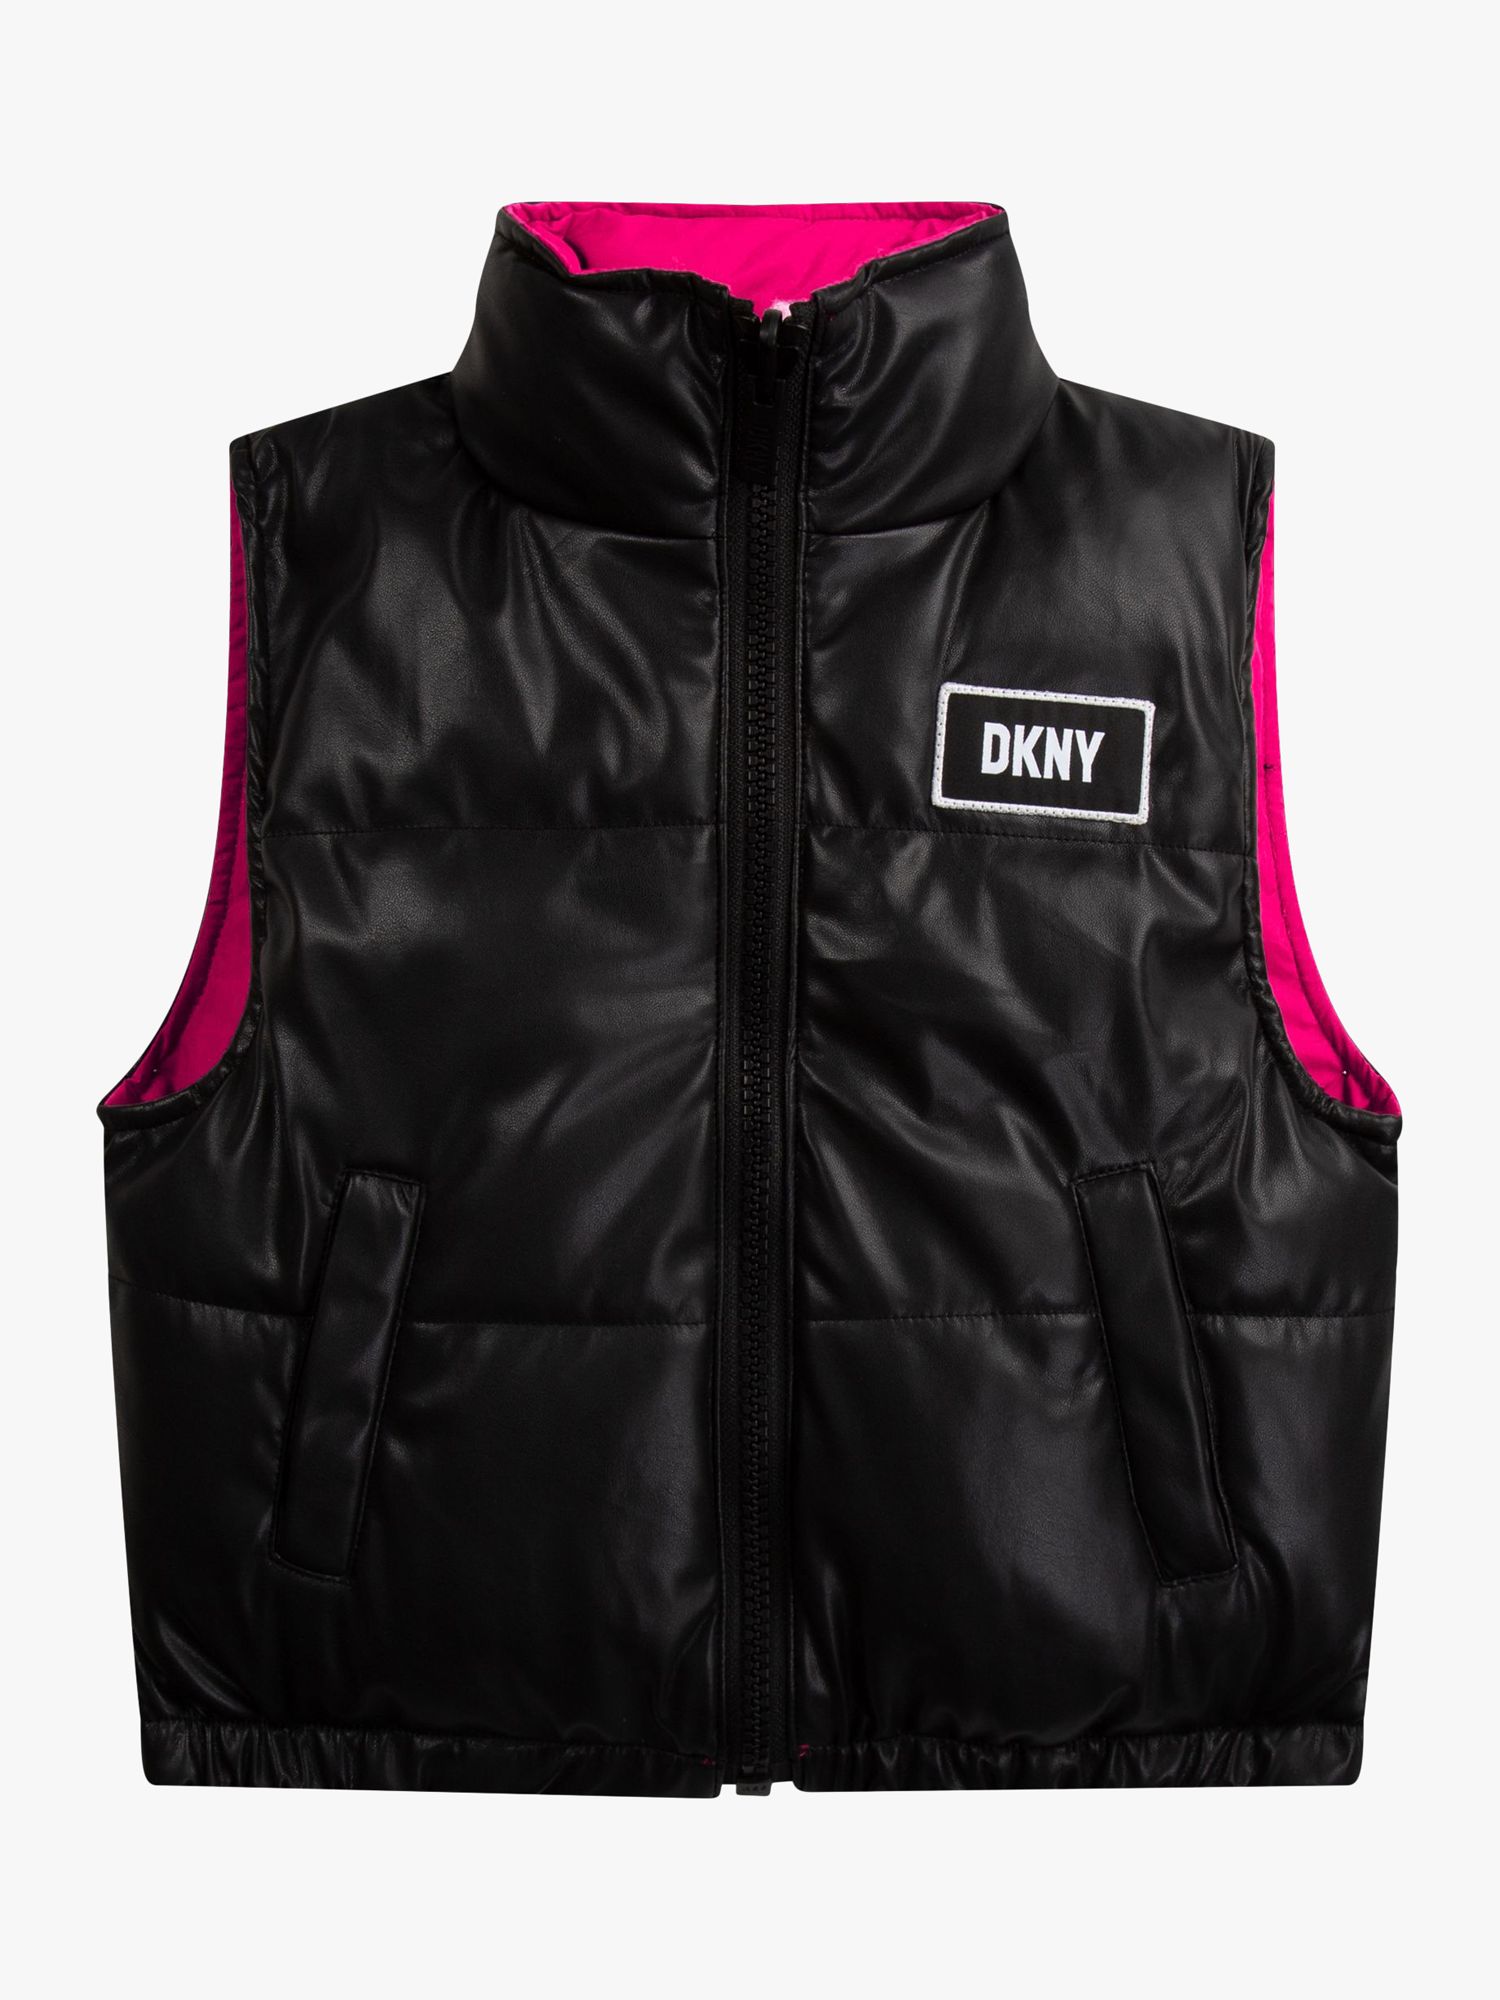 DKNY Kids' Reversible Puffer Gilet, Black/Pink at John Lewis